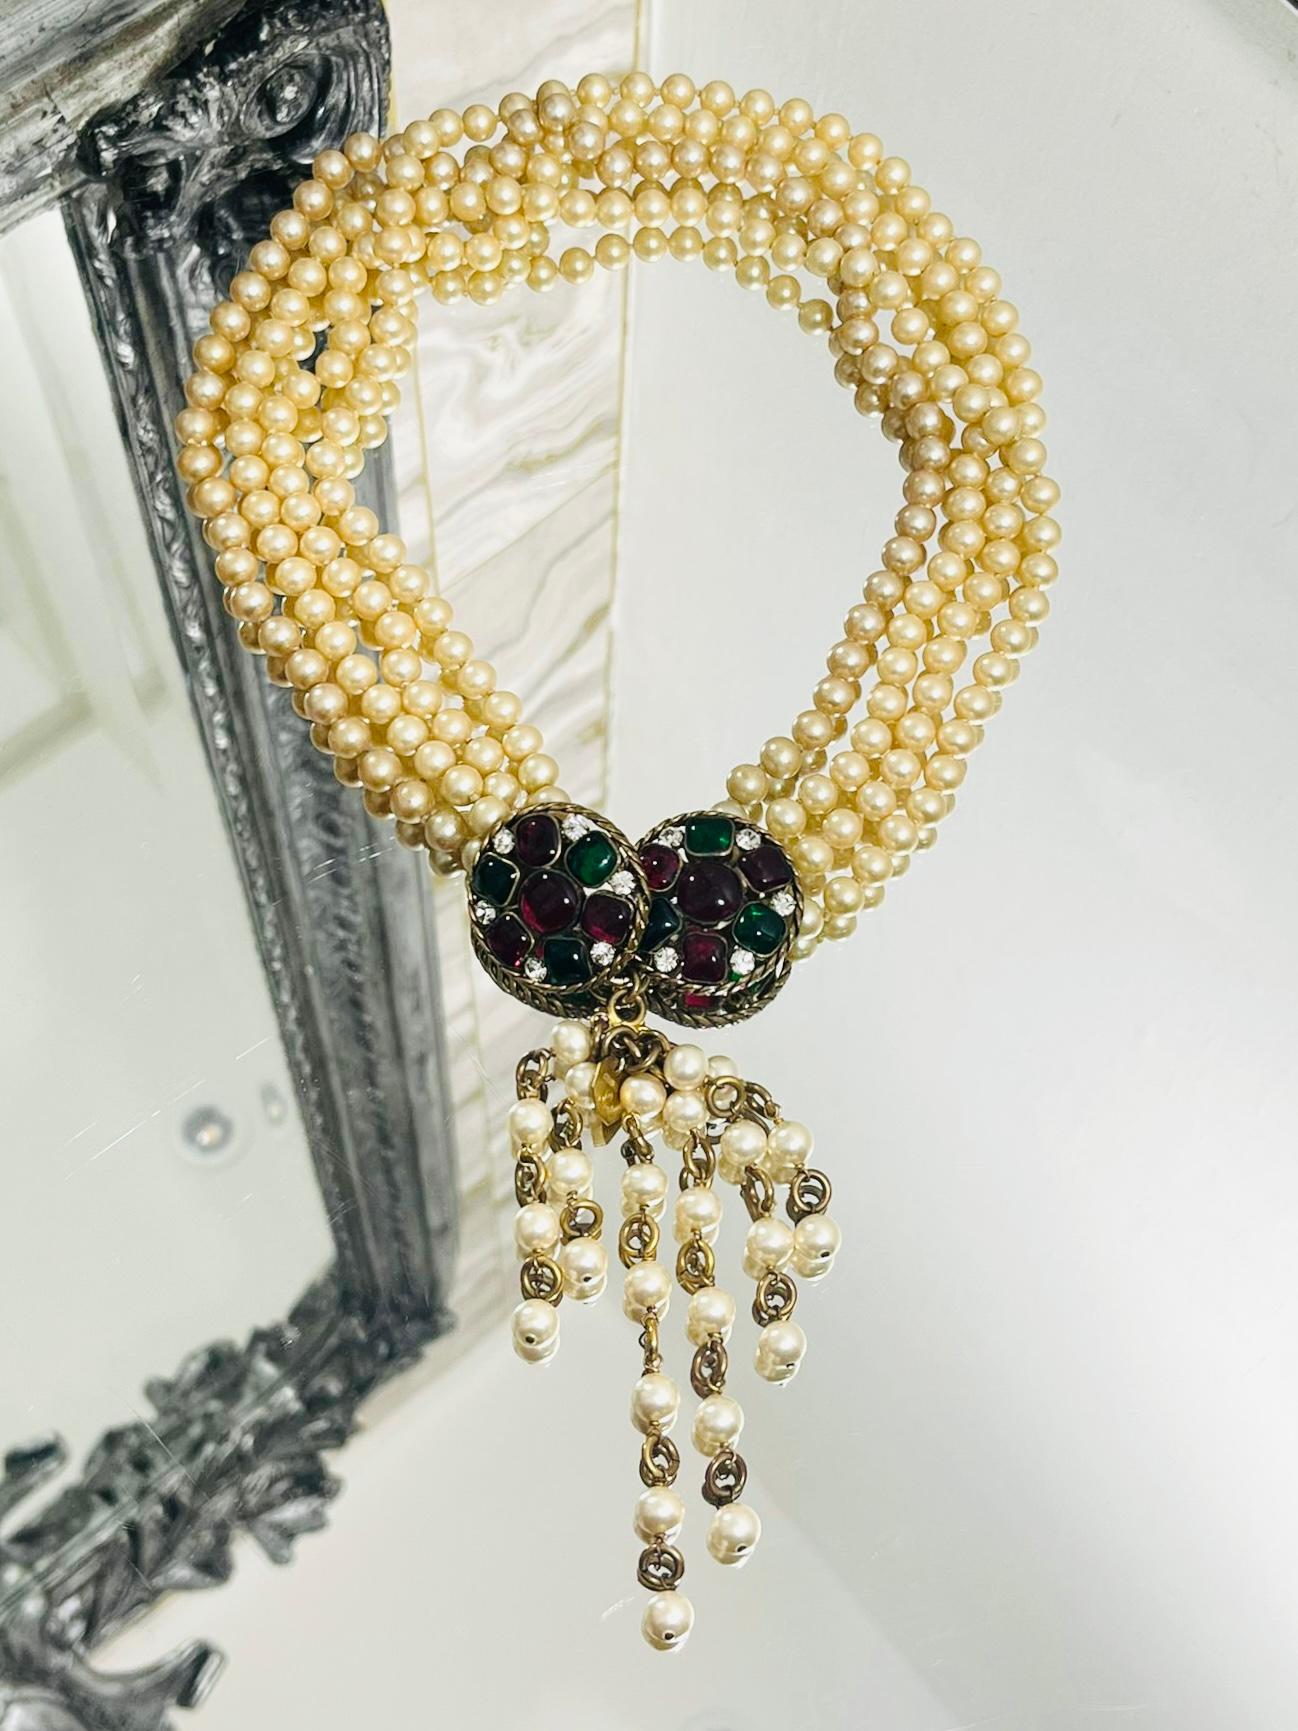 Women's Chanel Vintage Pearl & Gripoix Necklace By Victoire de Castellane For Sale